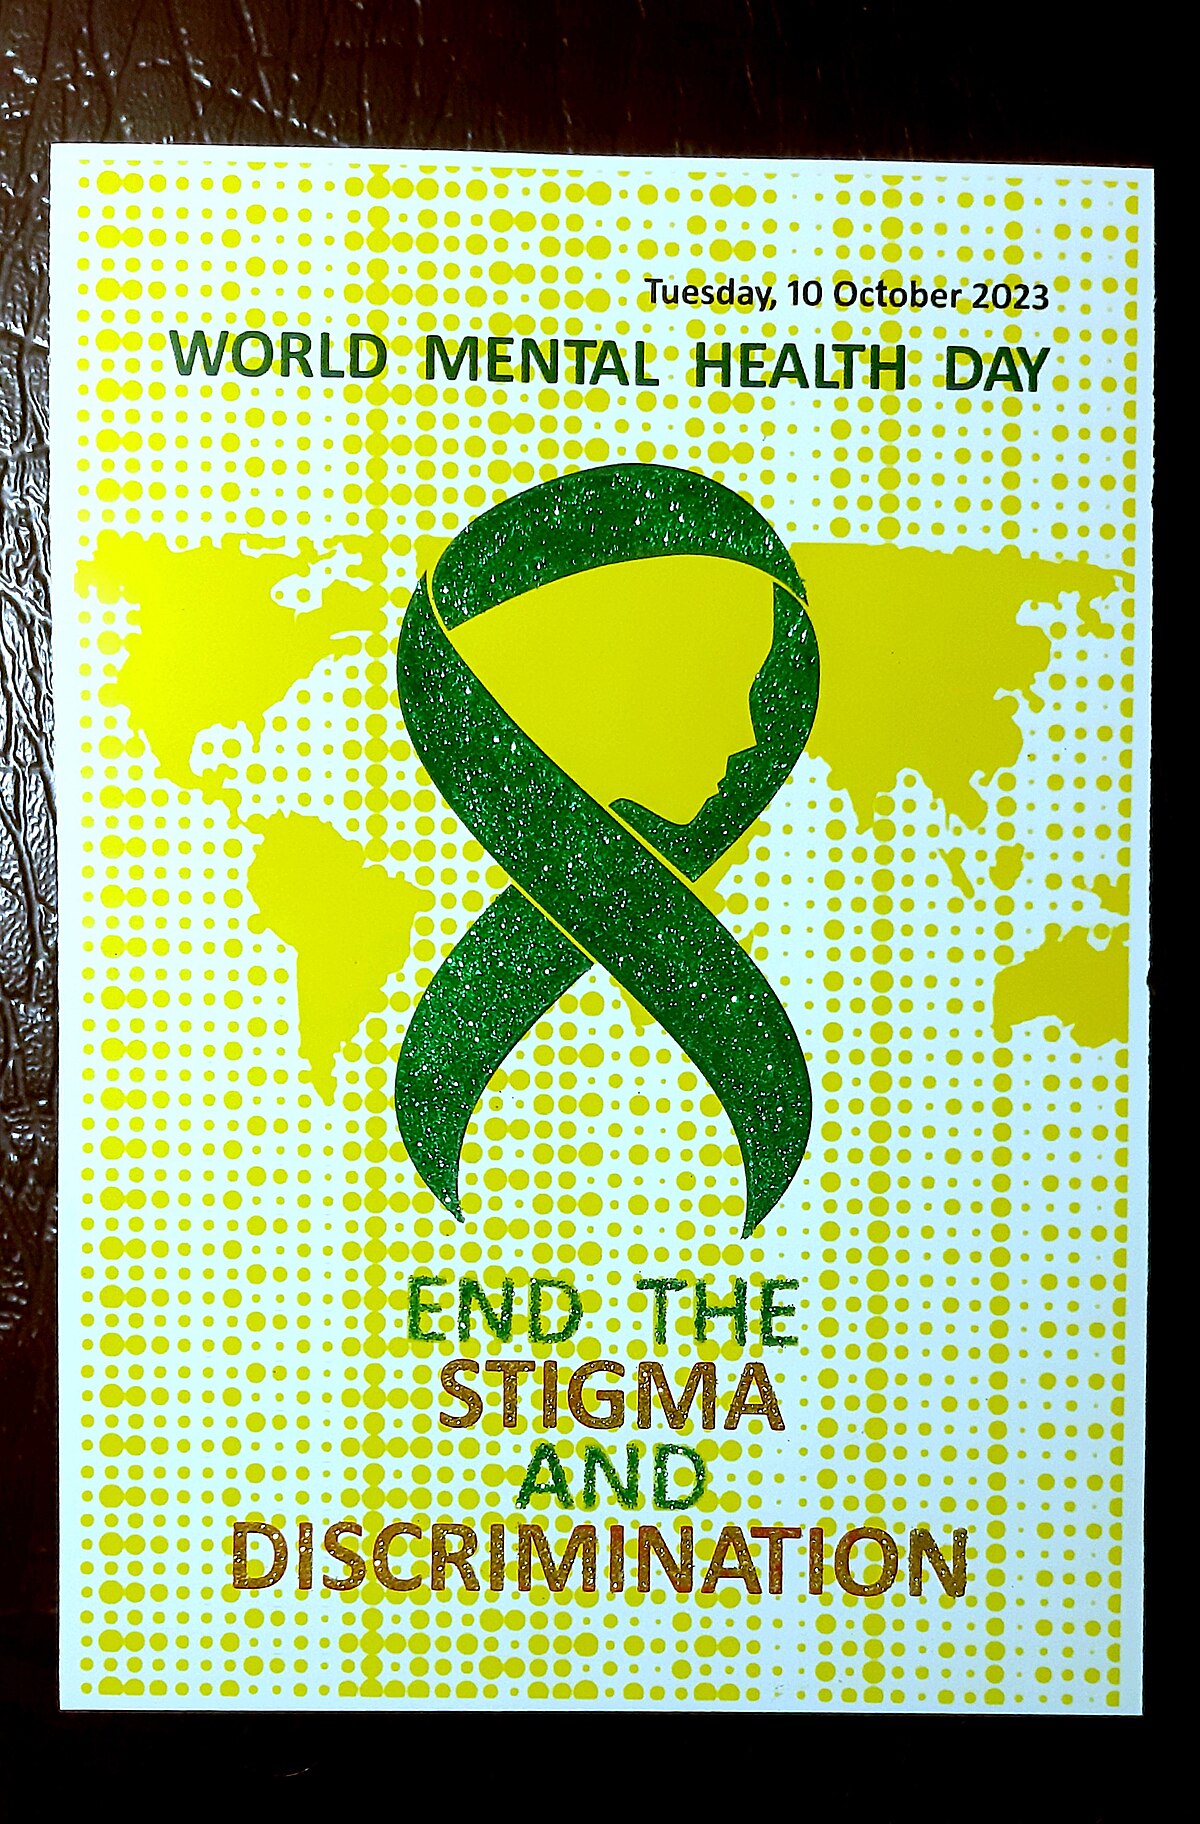 mental health awareness week